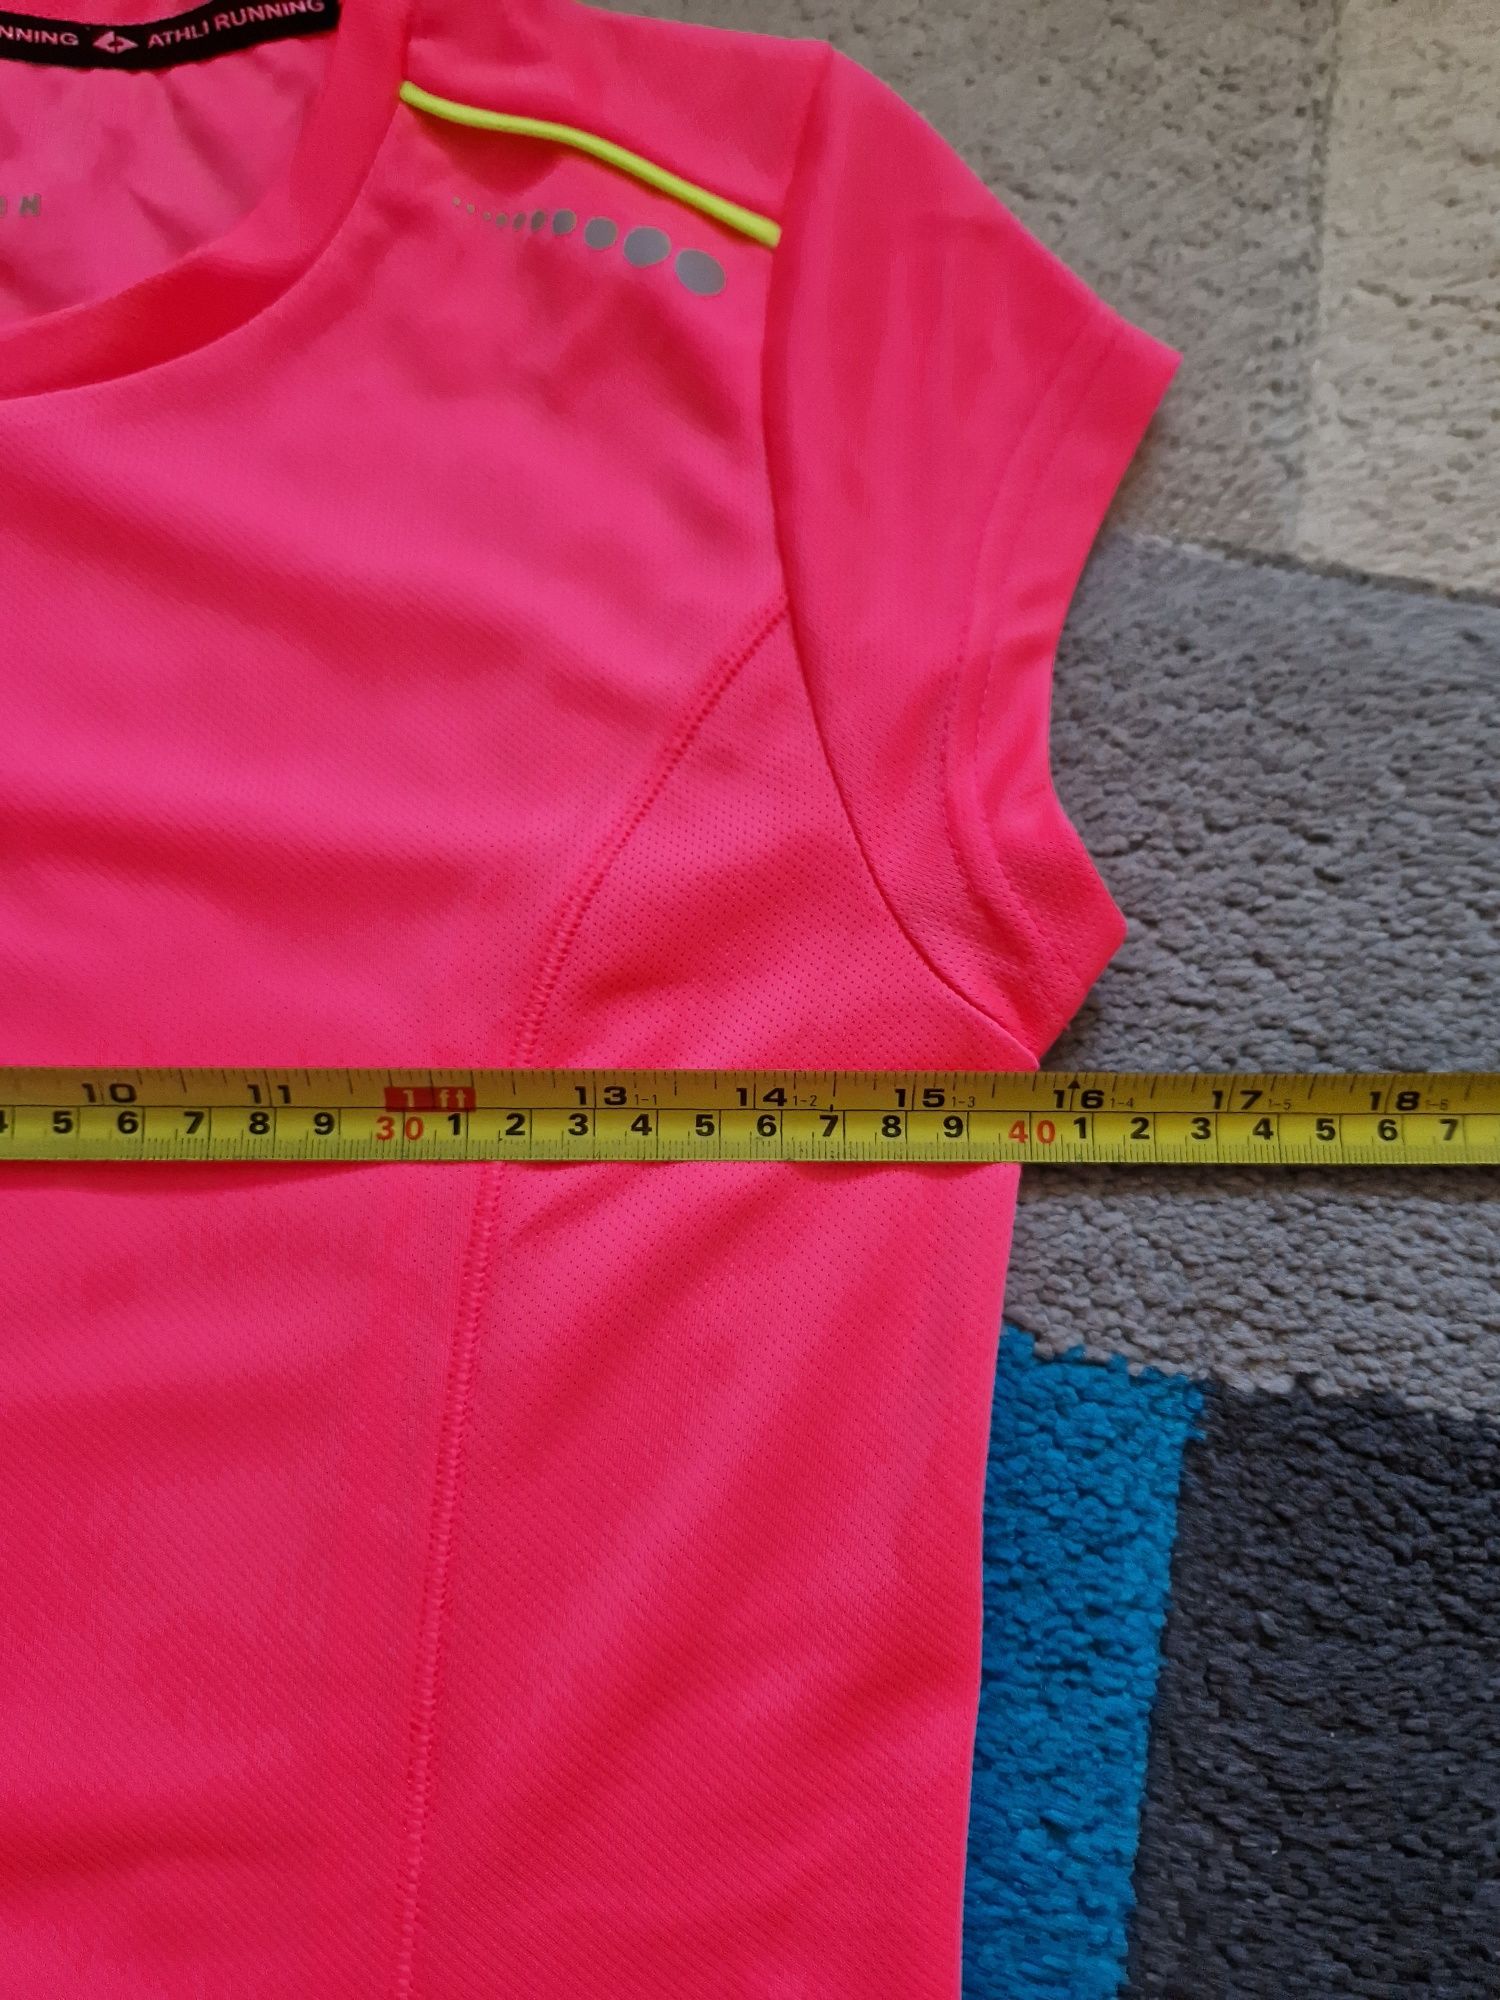 Damska/ młodzieżowa koszulka roz S fitness/ siłownia/ bieganie